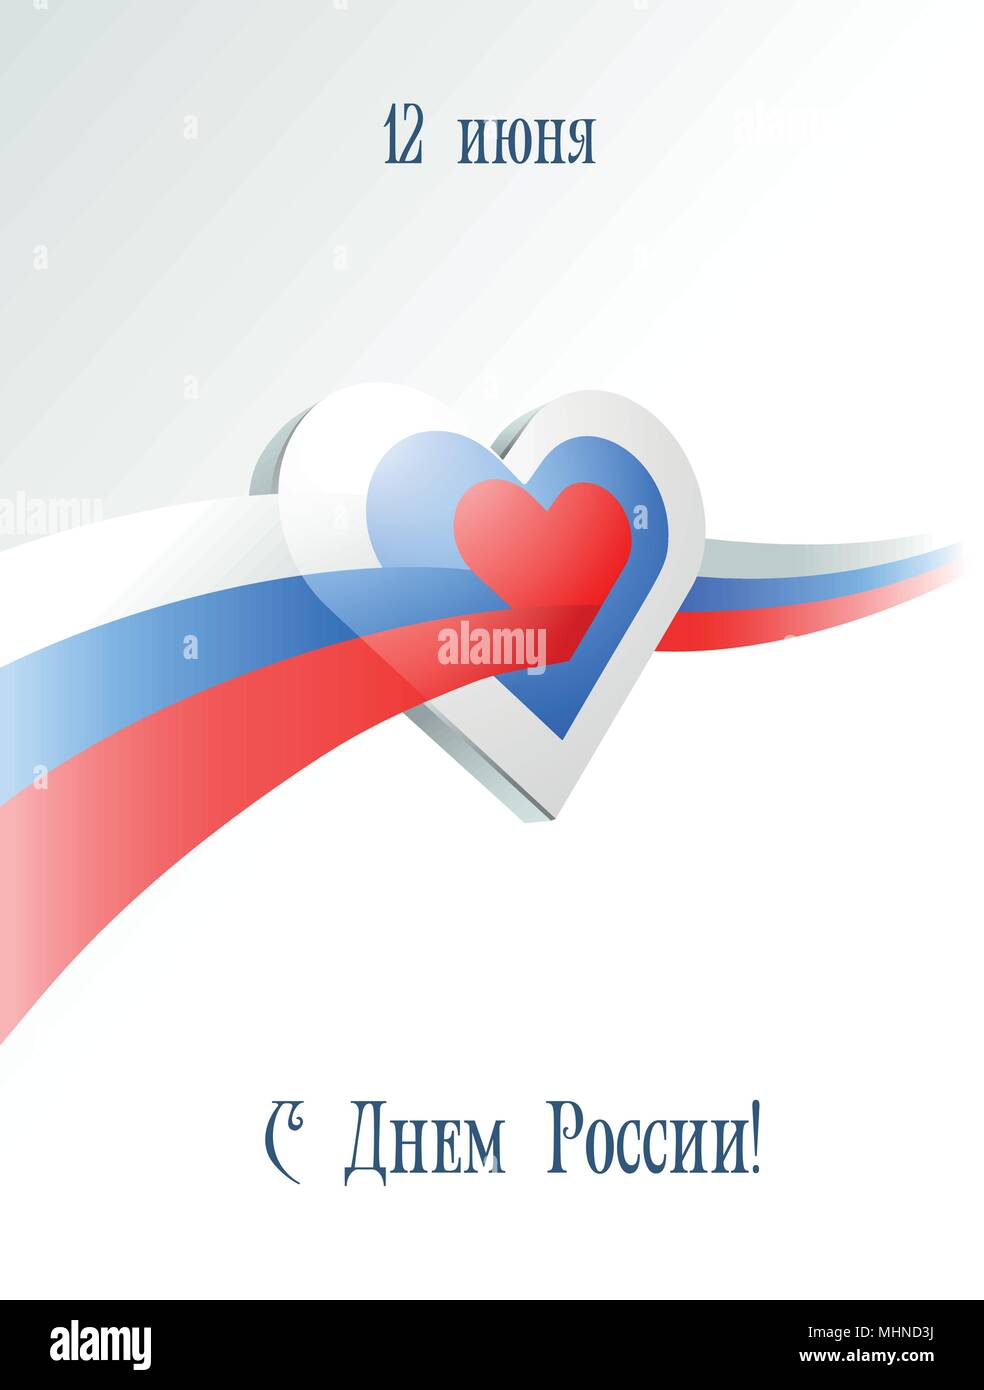 Am 12. Juni. Happy Russland Tag. Grußkarte mit wehenden russischen Flagge kreuze Herz. Vector Illustration. Stock Vektor